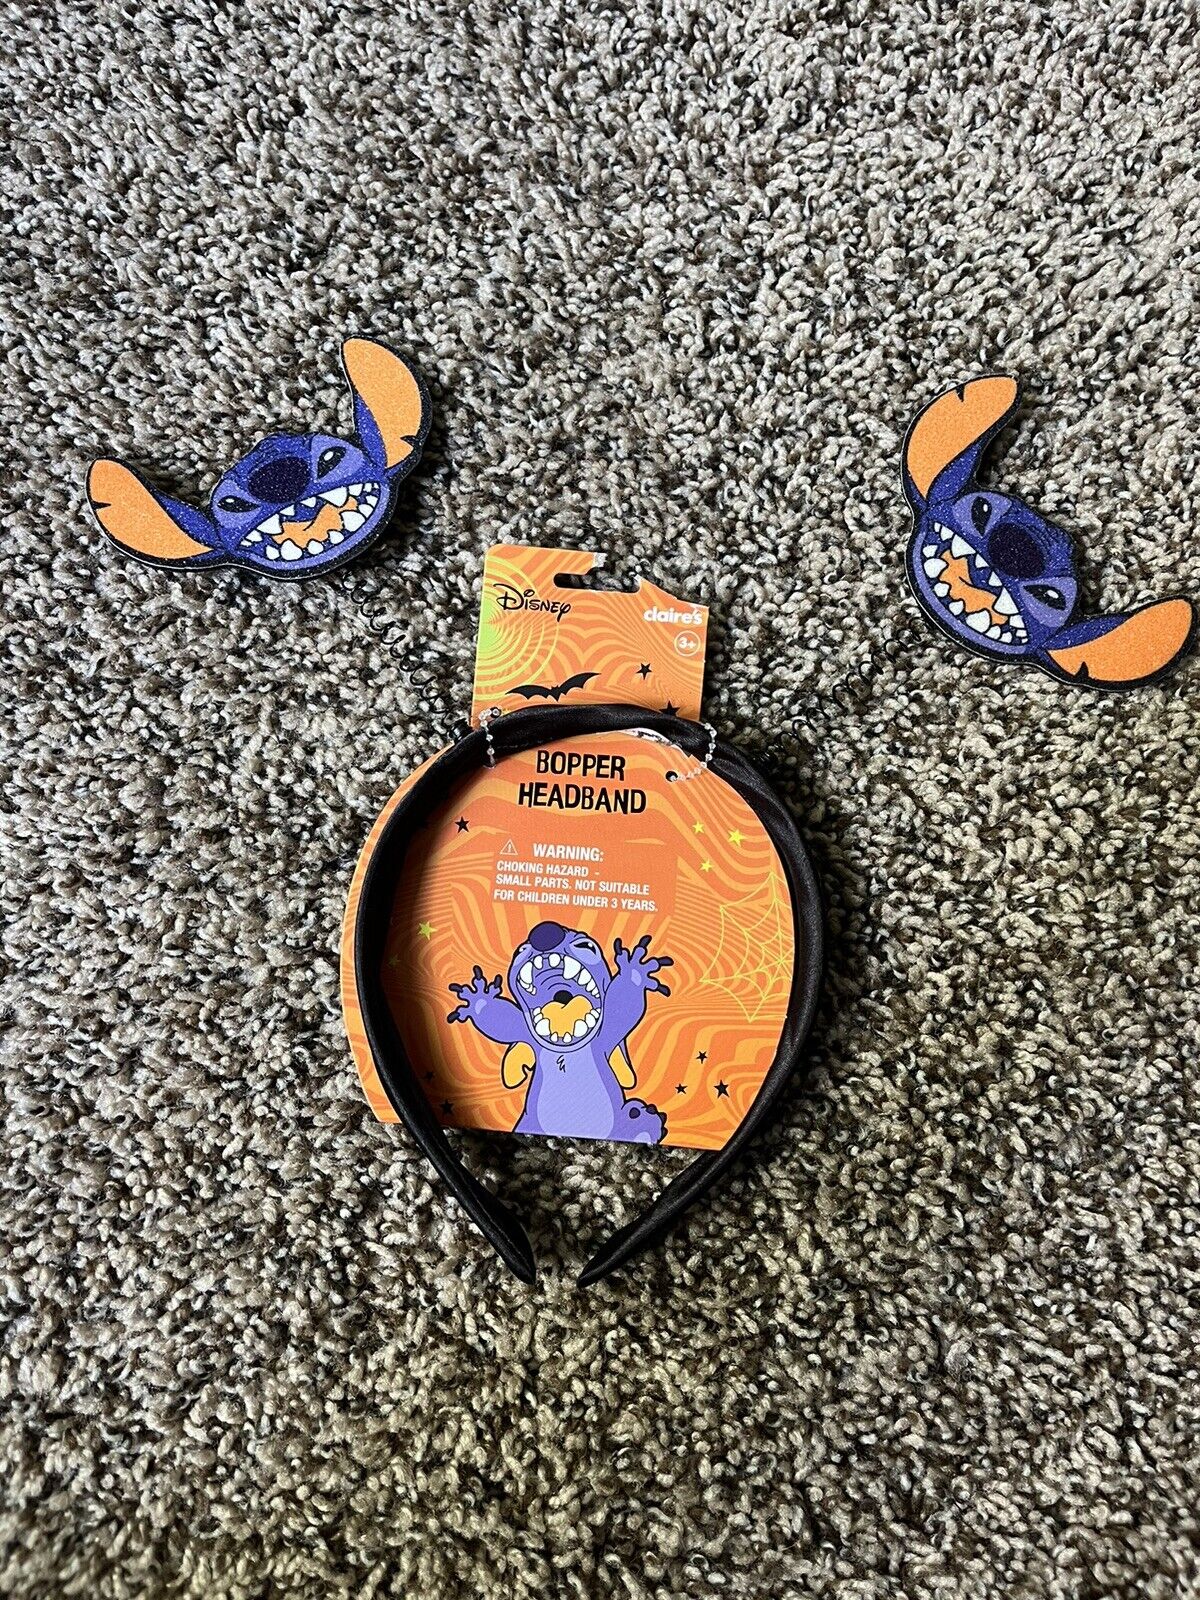 Disney Claire’s Halloween Stitch Headband Bopper Lilo & Stitch New